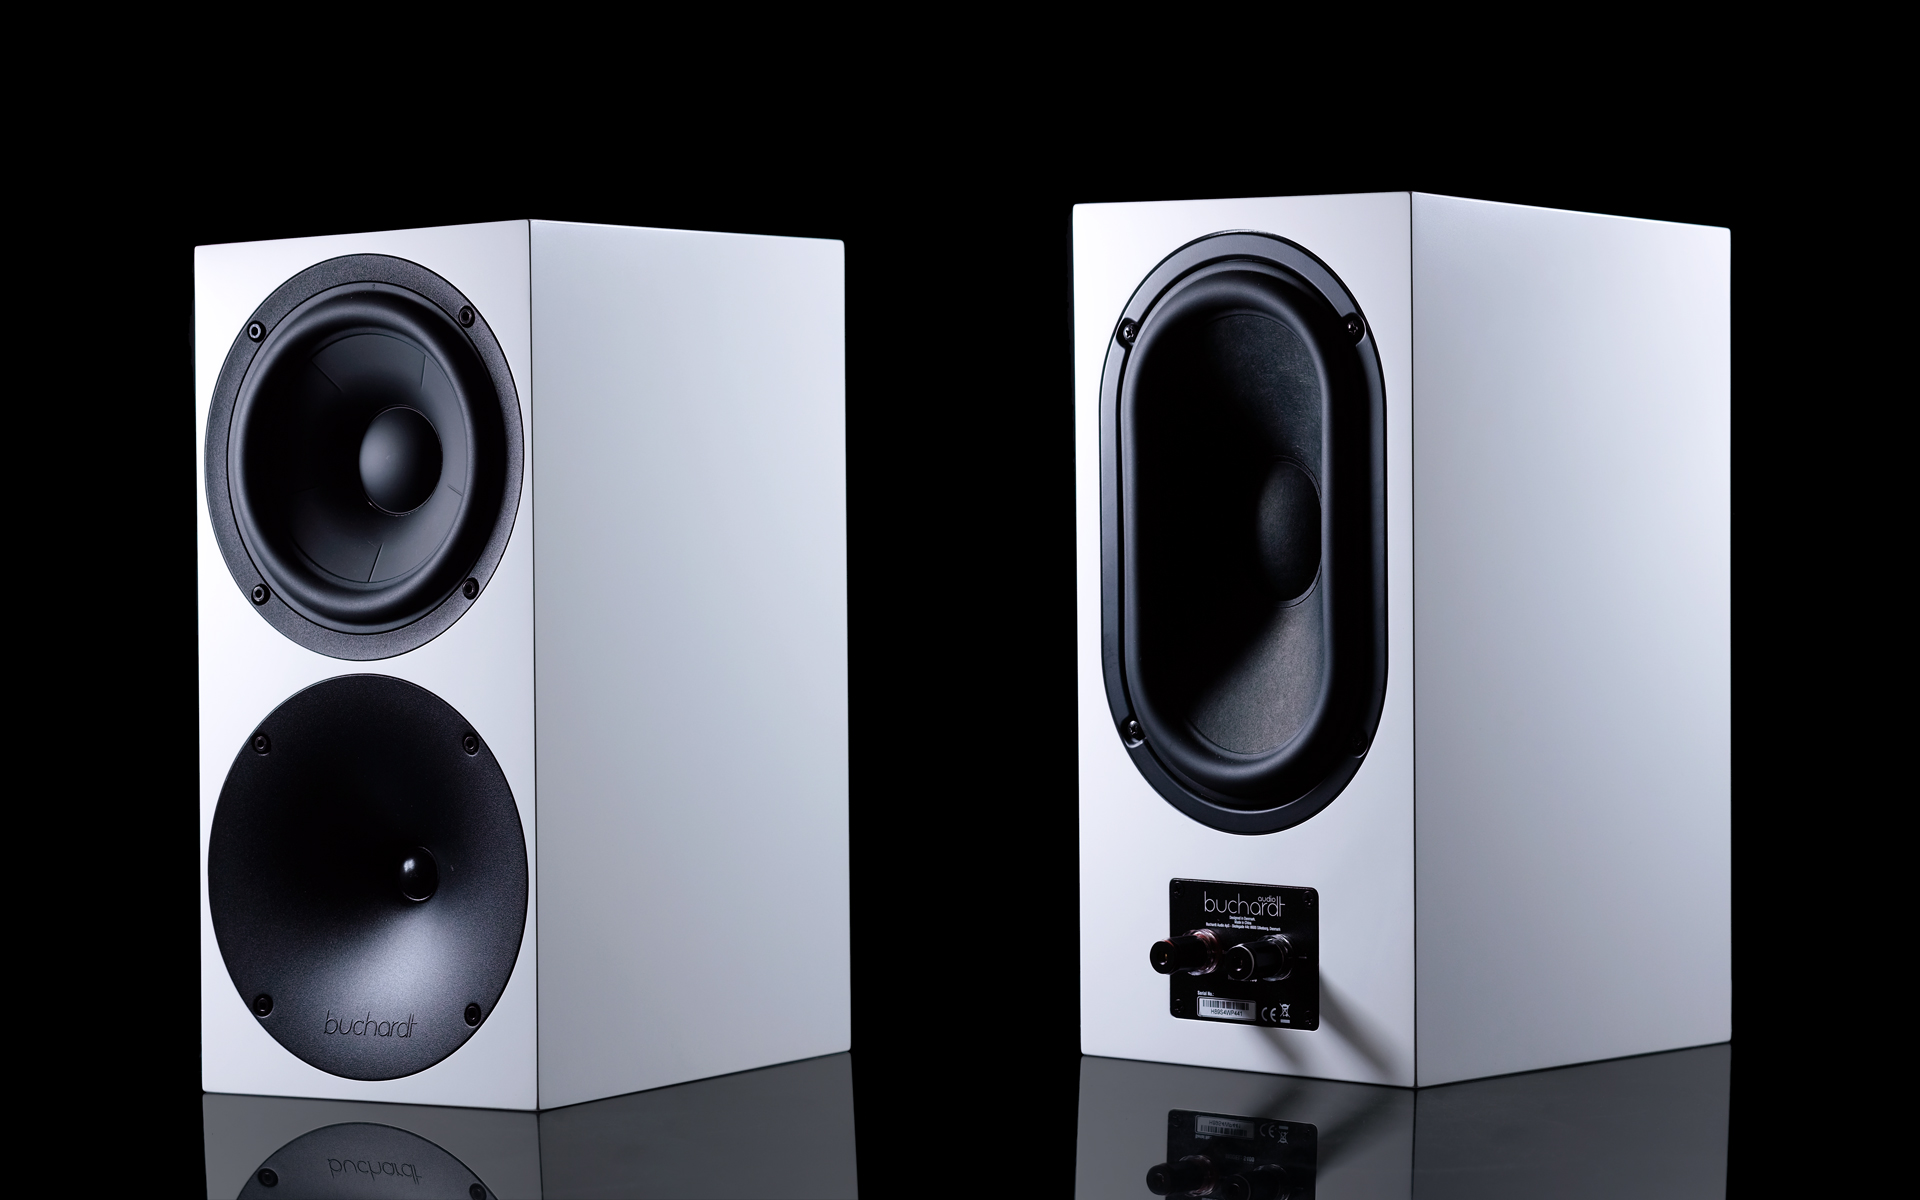 buchardt s400 speakers